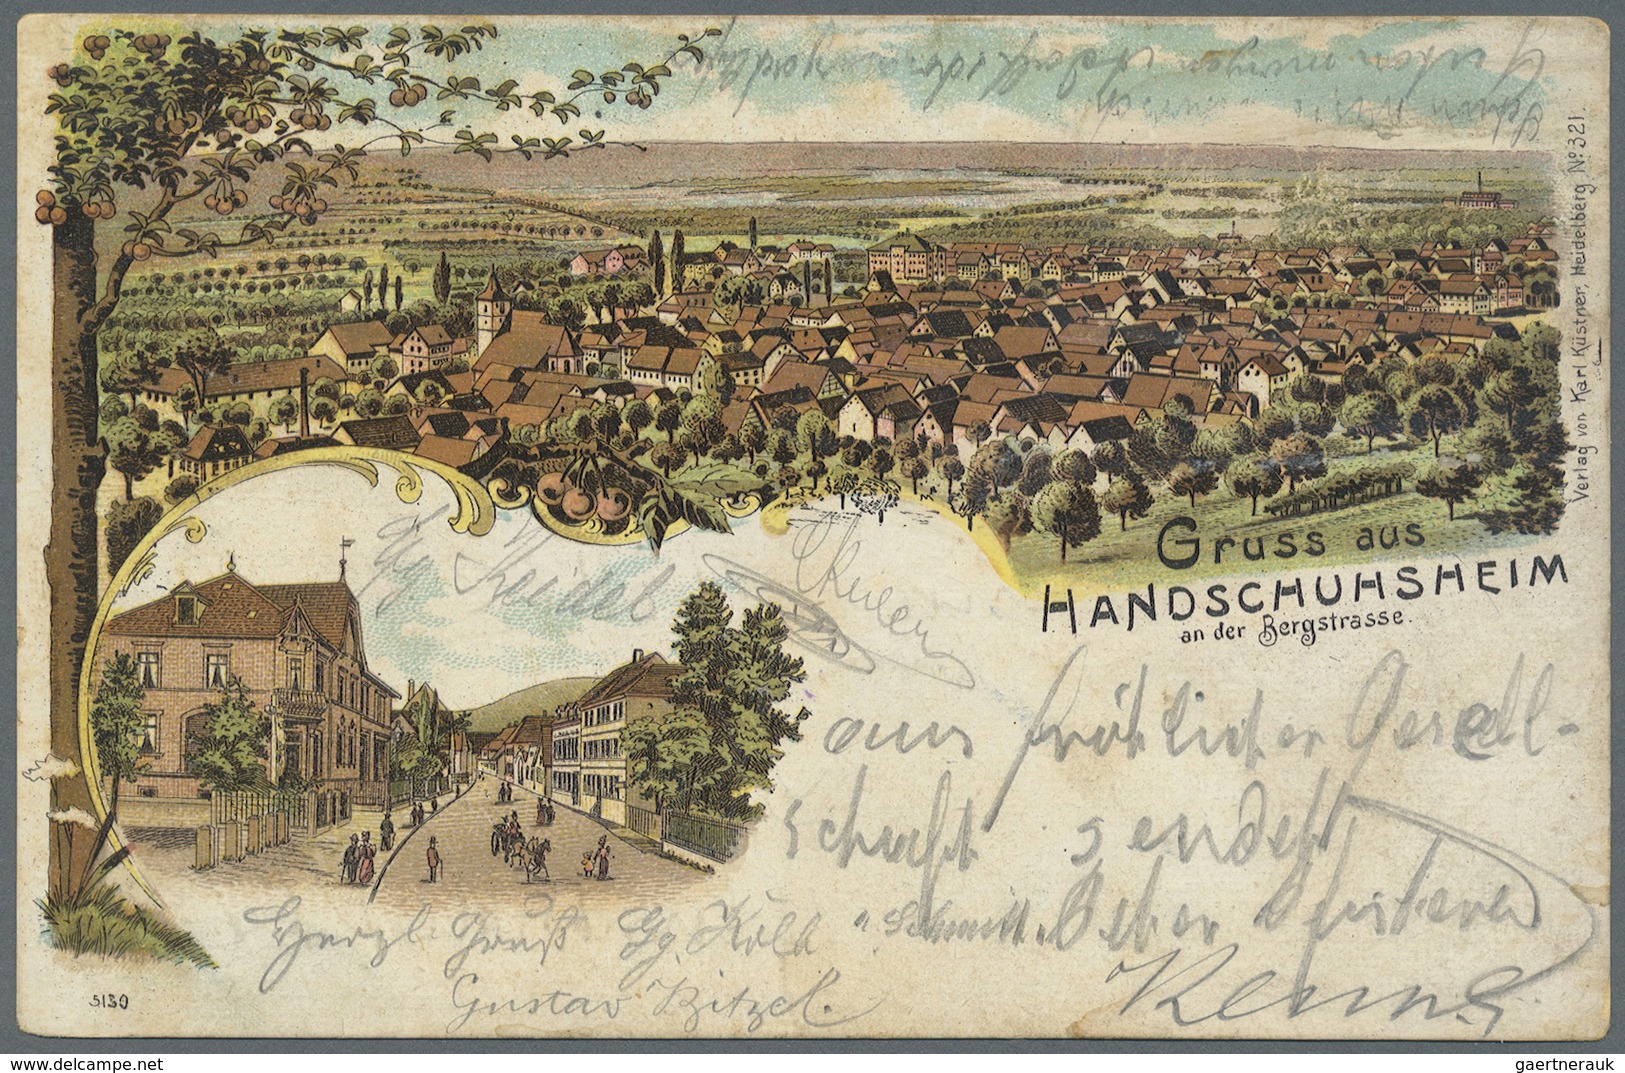 Ansichtskarten: Baden-Württemberg: BADEN: 1895-1910 (ca.), Sammlung von ca. 70 Ansichtskarten, dabei